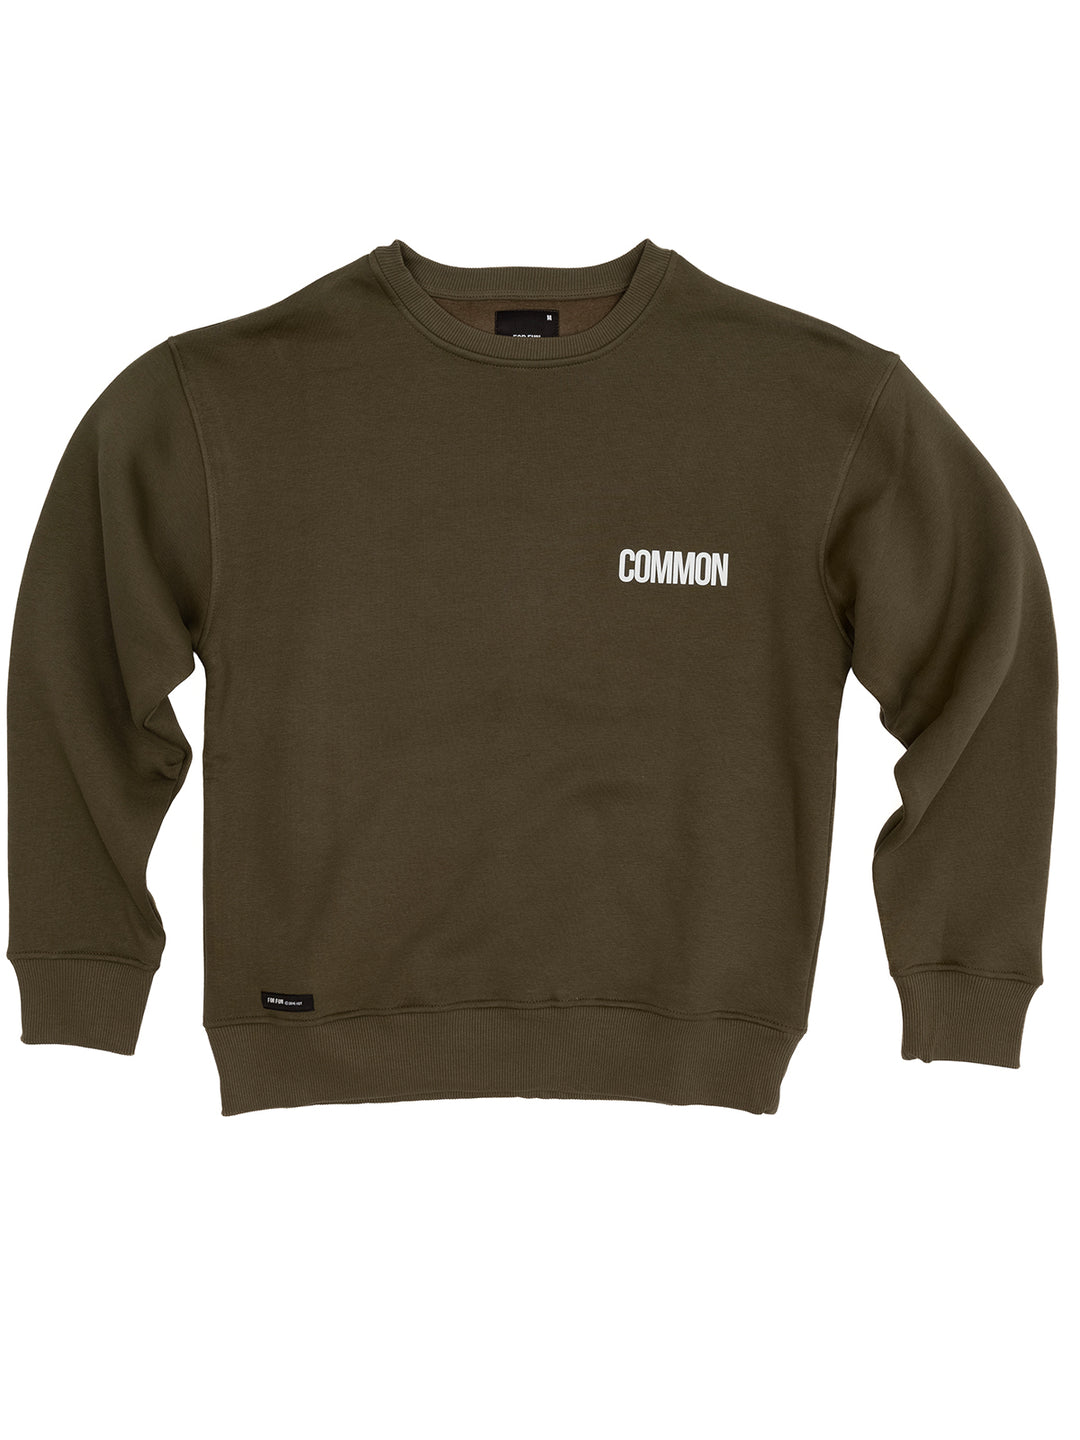 Common / Sweatshirt